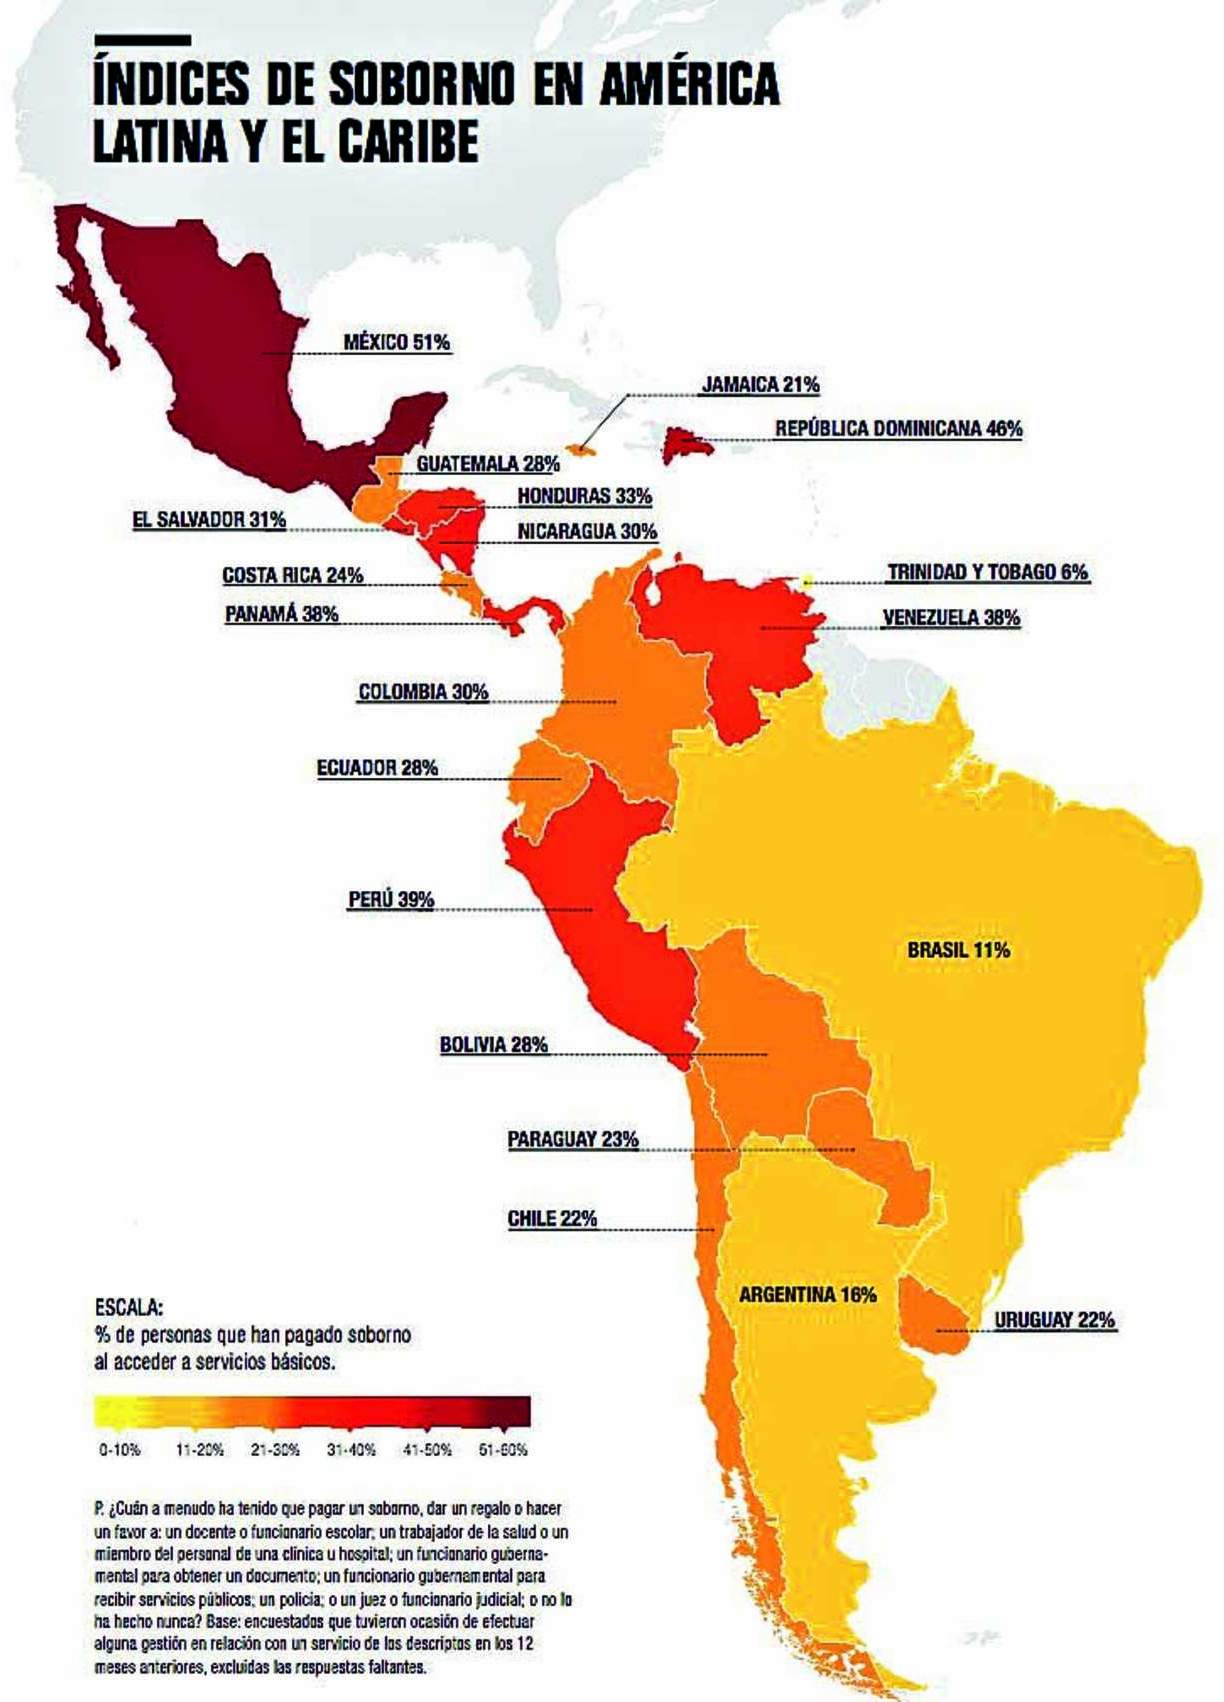 TI para las Américas. México es el país donde más encuestados aseguran haber pagado sobornos en el período de estudio. (TWITTER/@IntegridadMx)